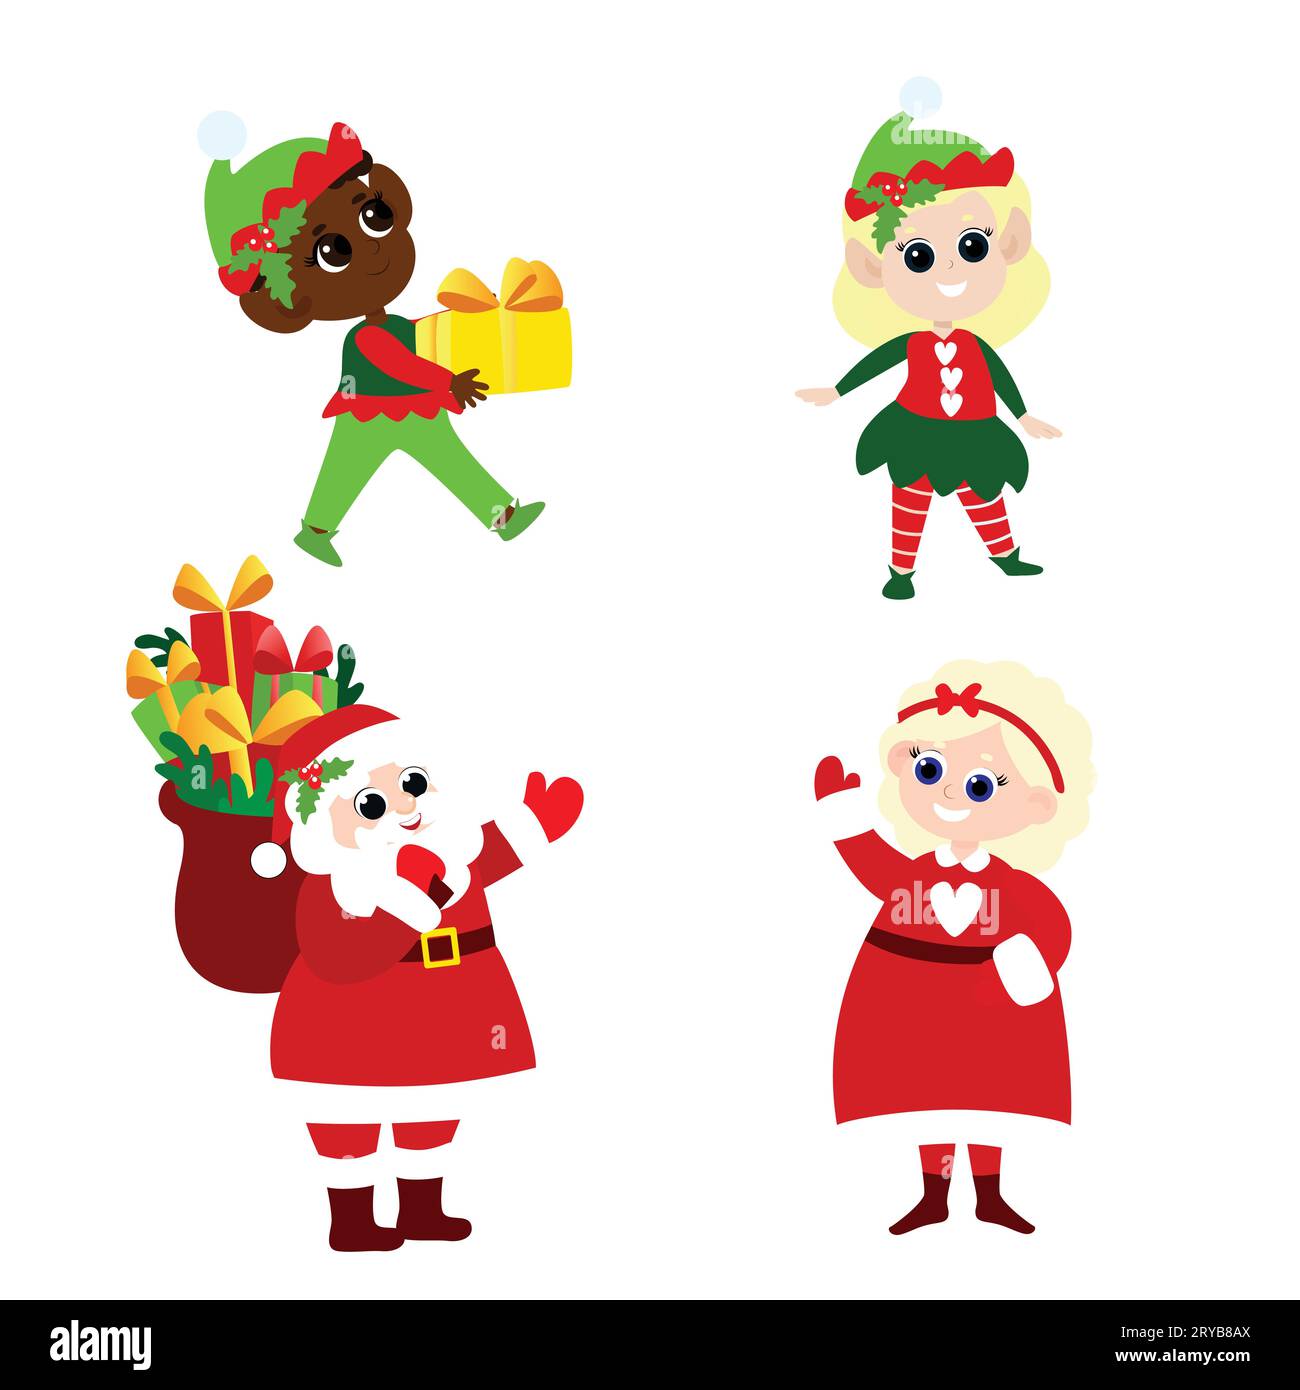 Ensemble du Père Noël, Mme Père Noël, elfes dans le style de bande dessinée isolé sur fond blanc. Personnages de Noël mignons et positifs. Illustration de Vecteur